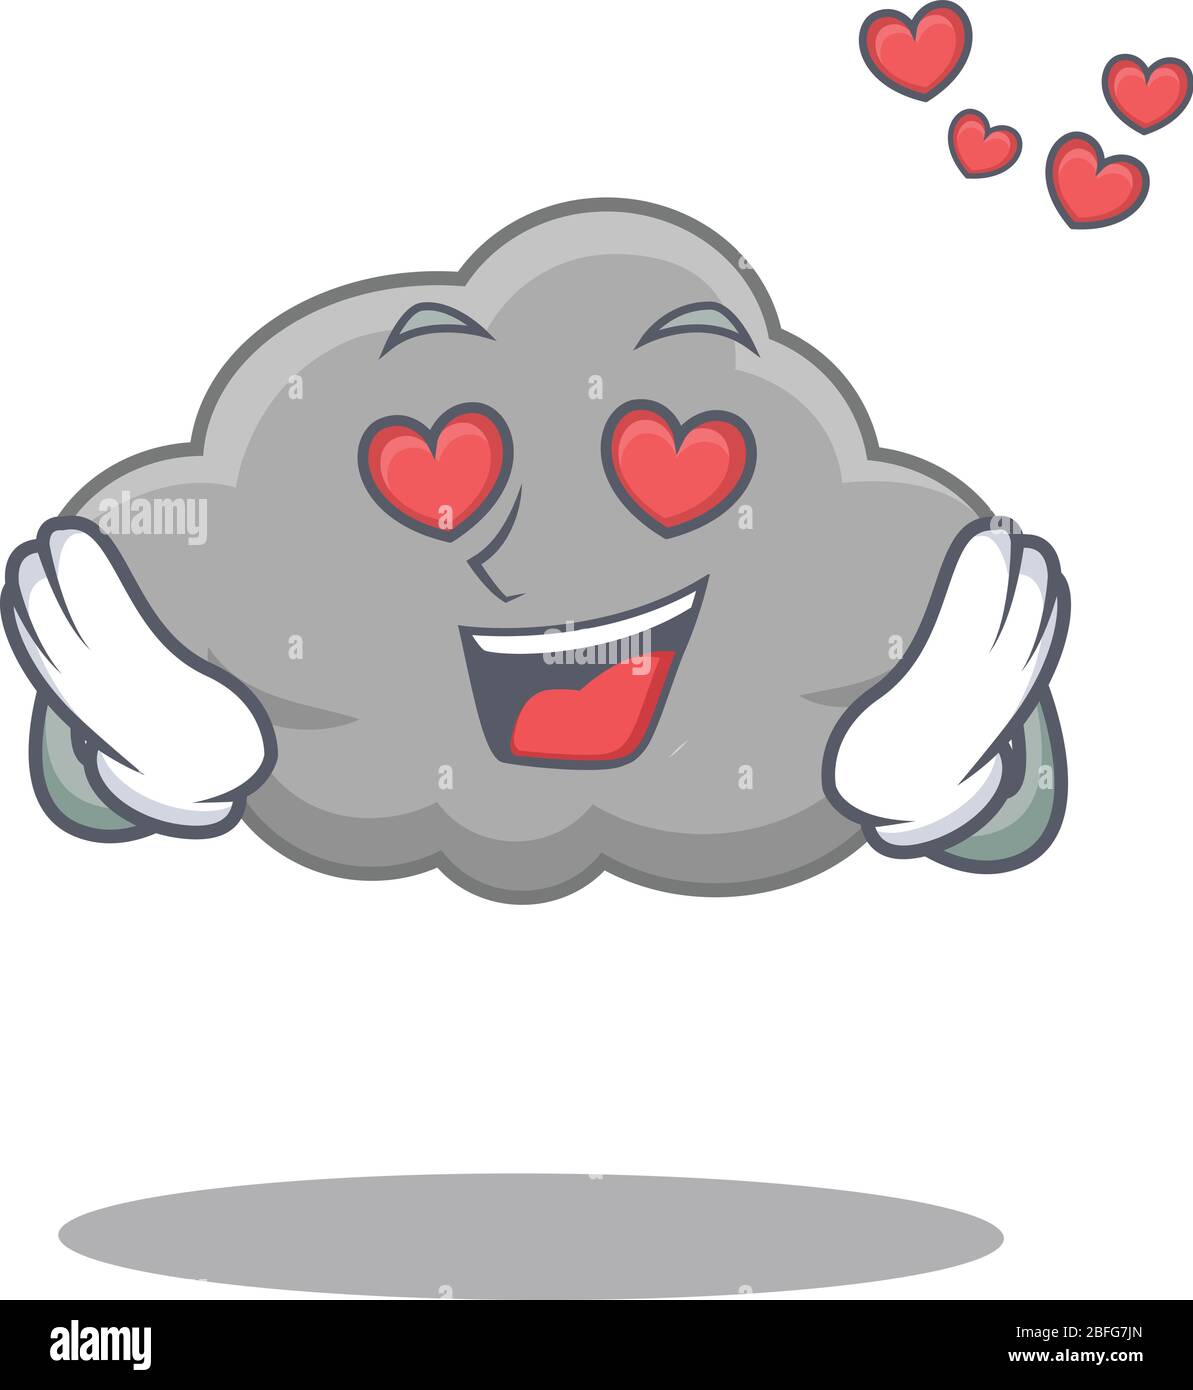 Carino personaggio grigio nuvola cartone animato ha un volto innamorato  Immagine e Vettoriale - Alamy